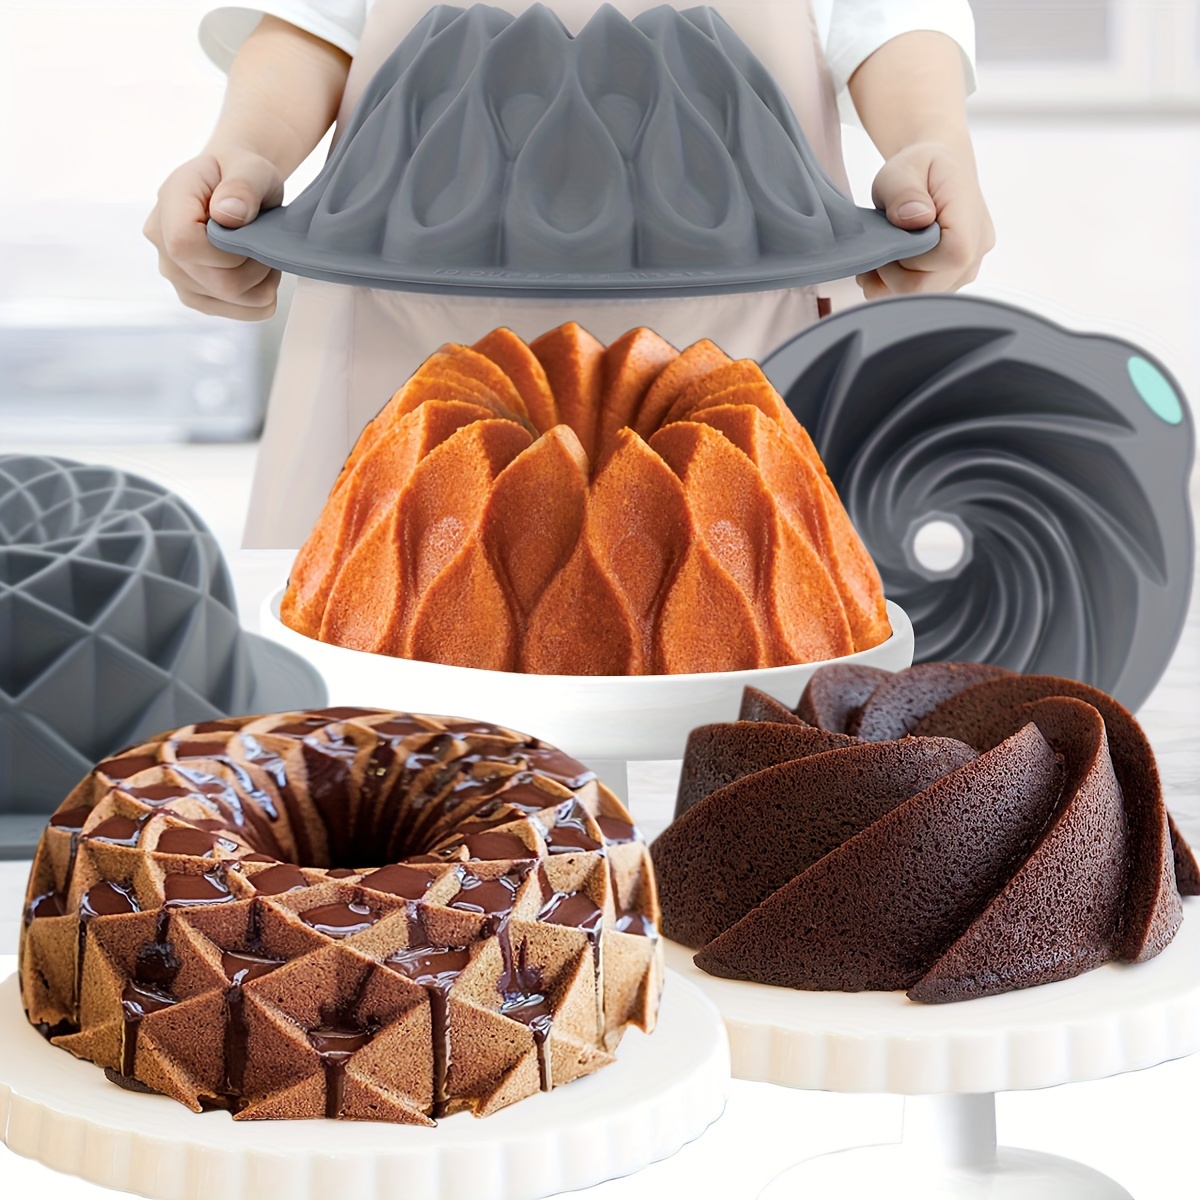 Nordic Ware Non-Stick Round Lotus Bundt Cake Pan